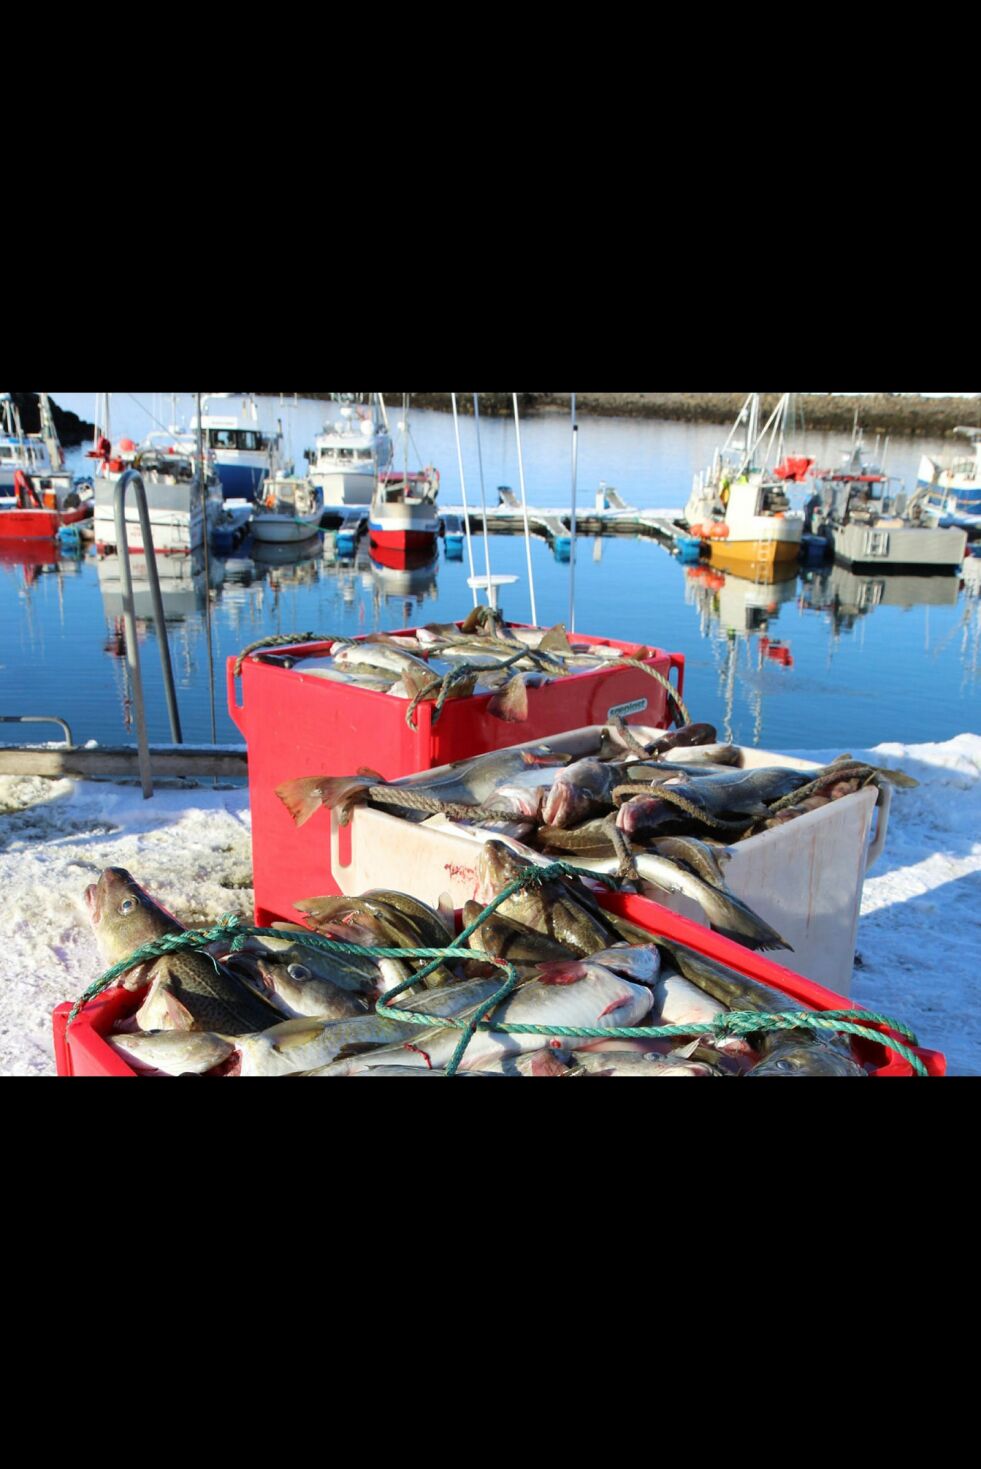 Fisket i Varangerfjorden har tatt seg opp de siste dagene, og i Nesseby kommer det fisk over kaikanten.
Arkivfoto: Torbjørn Ittelin